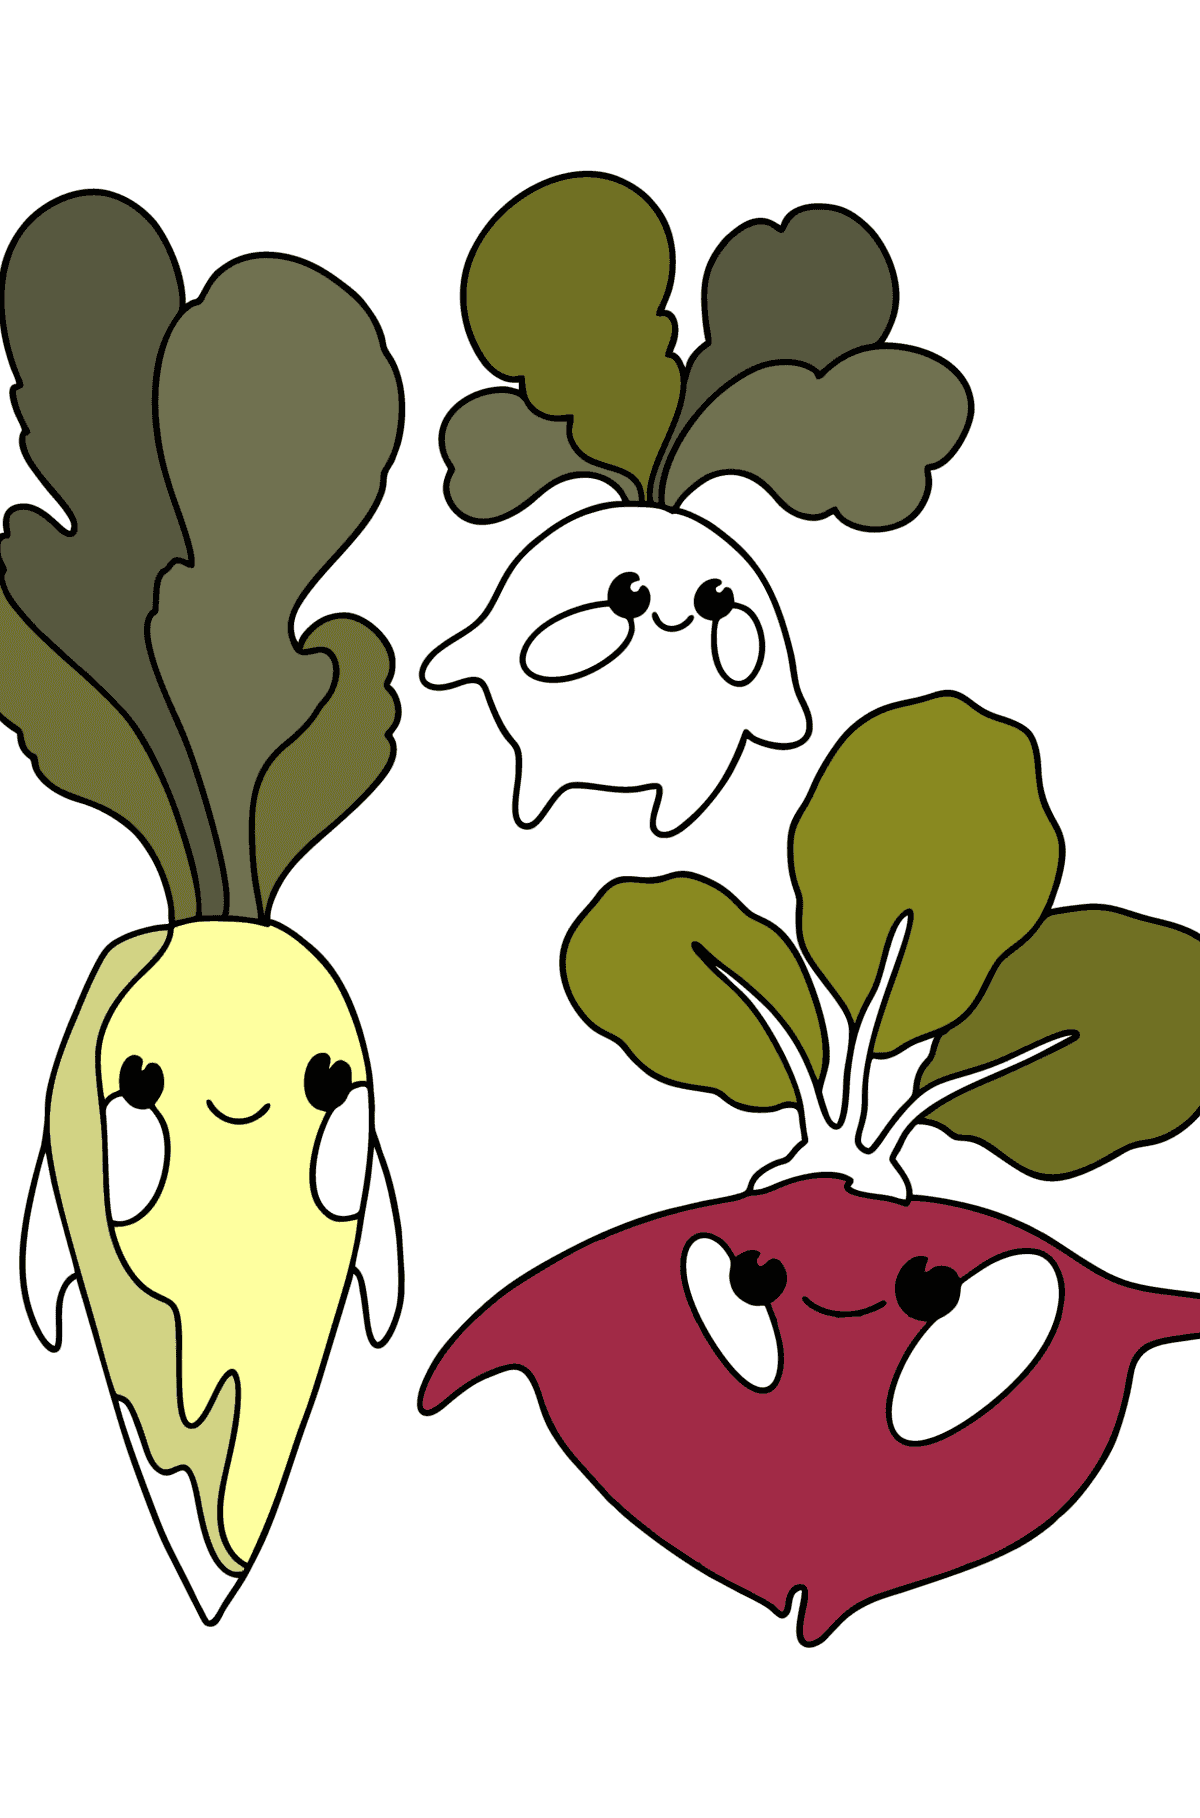 Coloriage Légumes ( daikon, radis, betteraves ) - Coloriages pour les Enfants